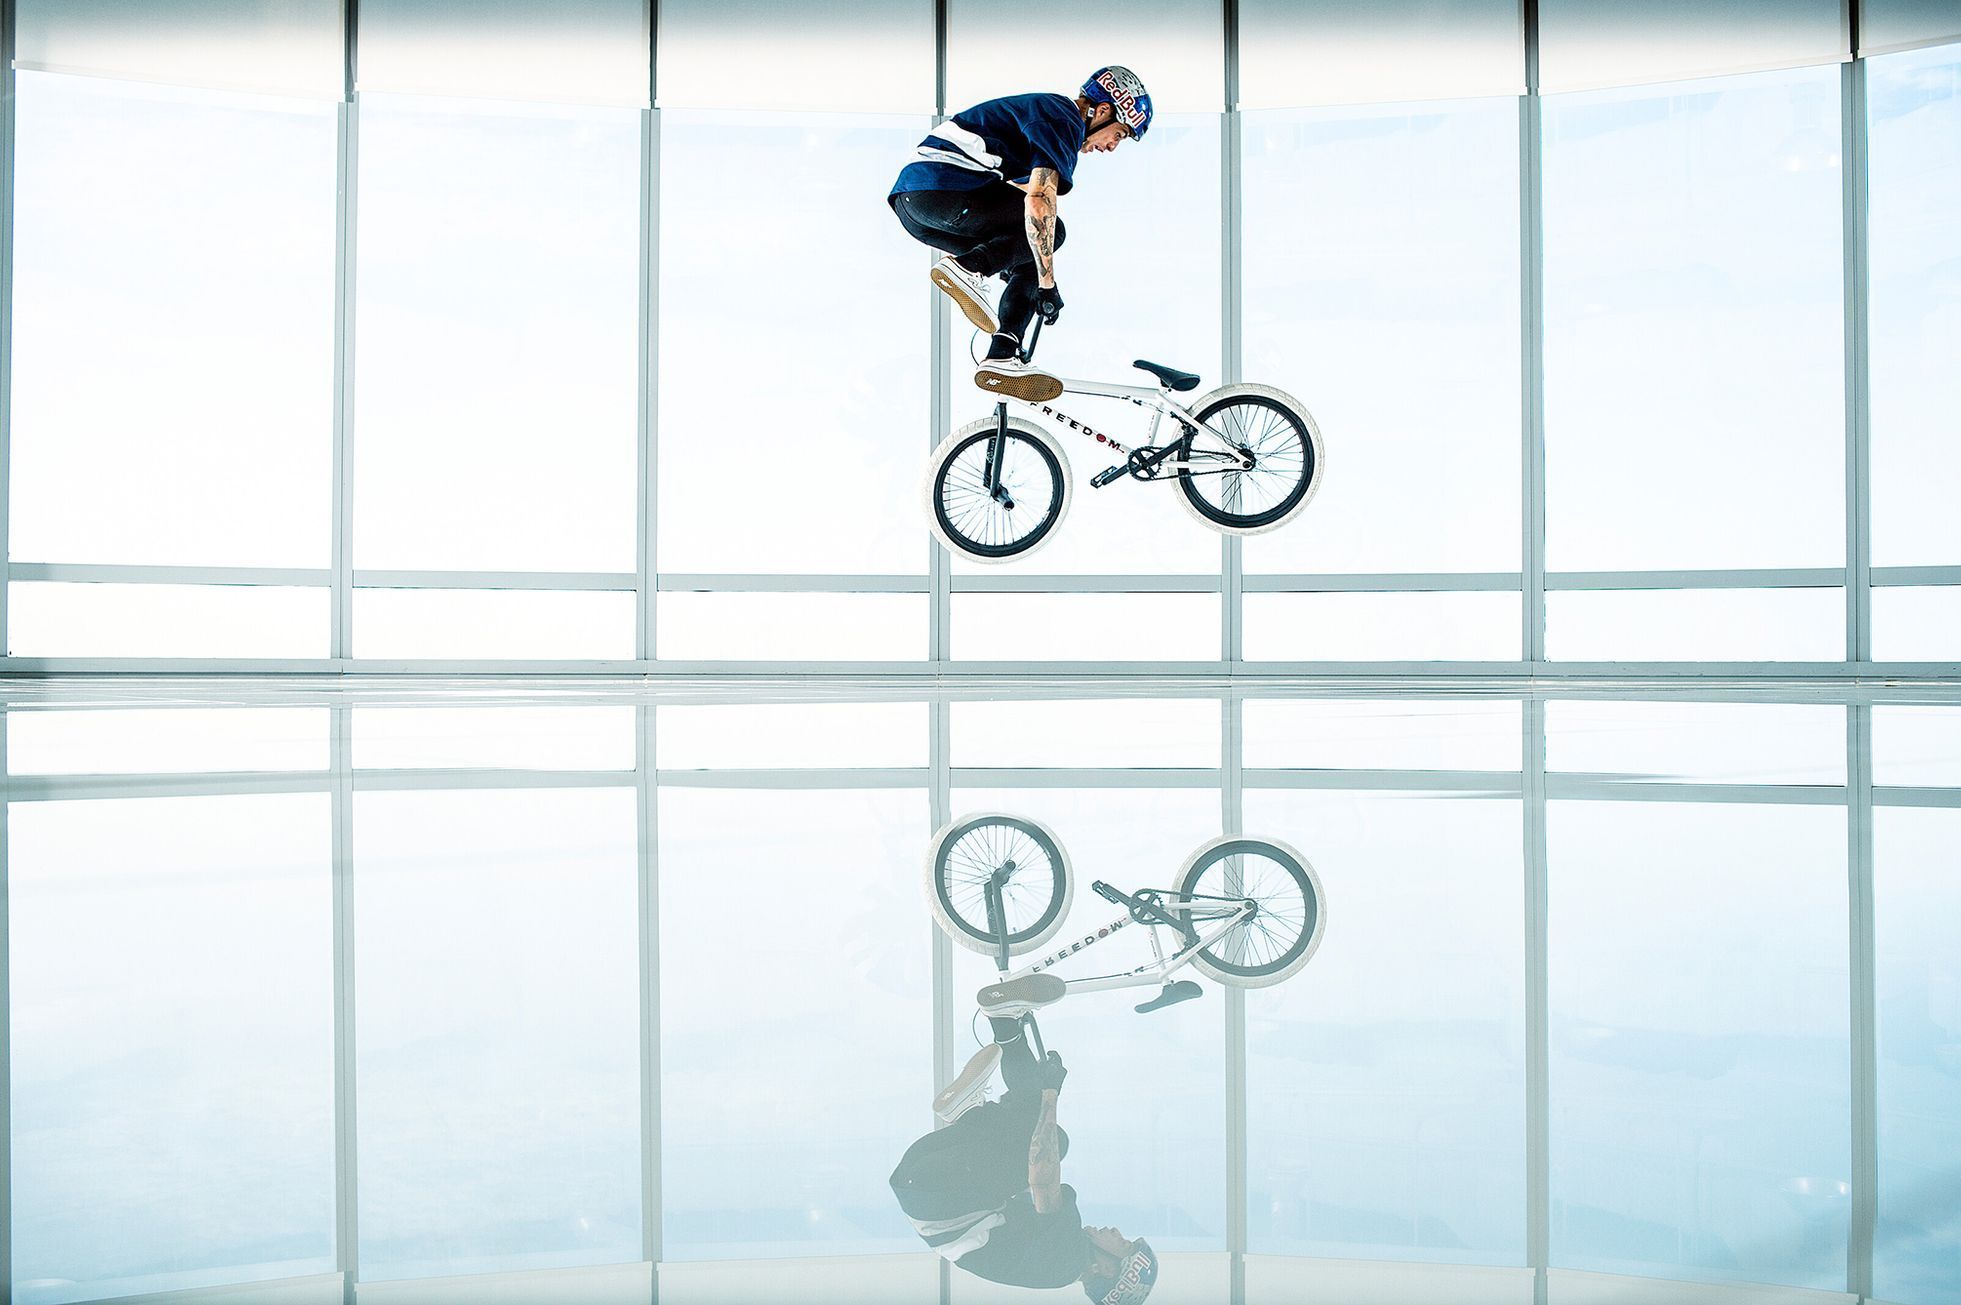 Biker Kriss Kyle seskakuje z vrtulníku na střechu hotelu Burž al Arab